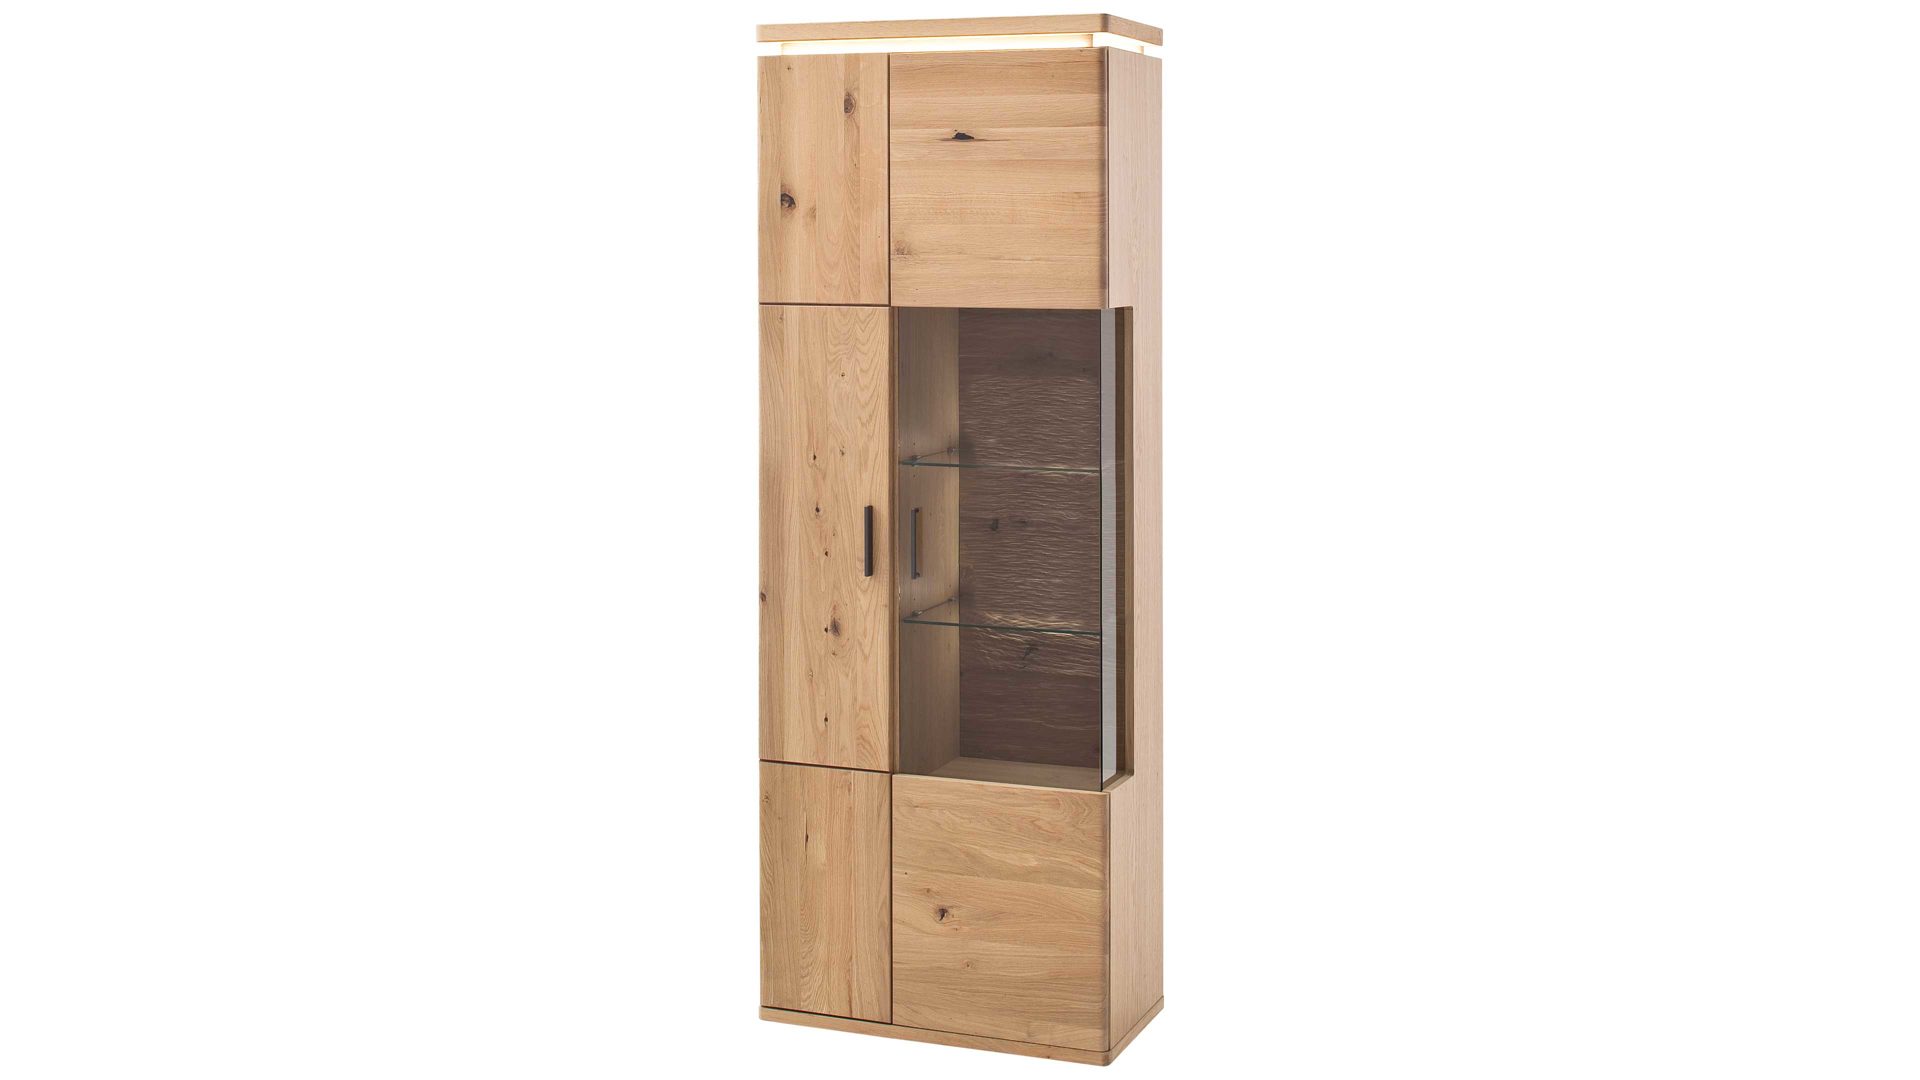 Vitrine Mca furniture aus Holz in Holzfarben Wohnprogramm Barcelona - Kombi-Vitrine geölte Balkeneiche - zwei Türen, Breite ca. 75 cm